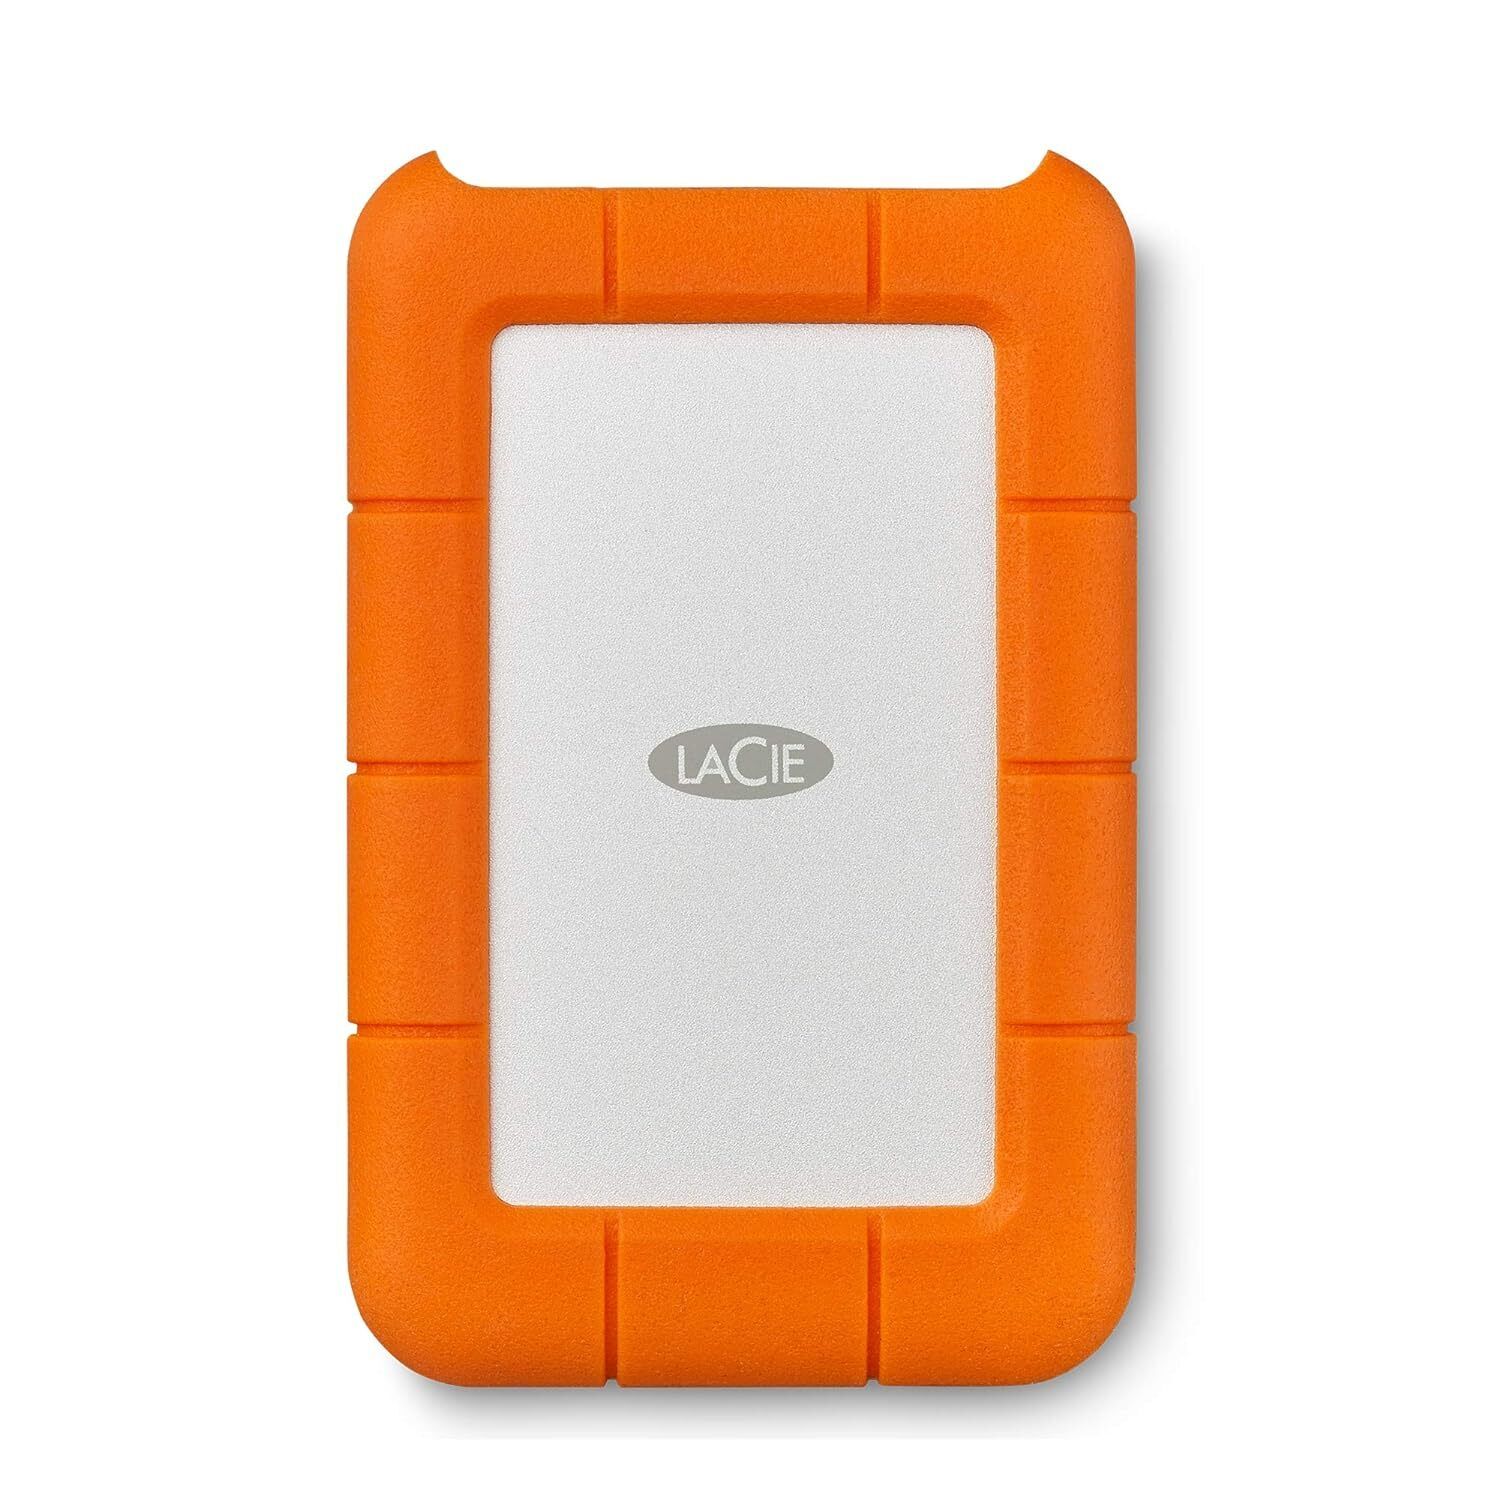 LaCie (LAC9000633) Rugged Mini 4TB External Hard Drive Portable HDD � USB 3.0